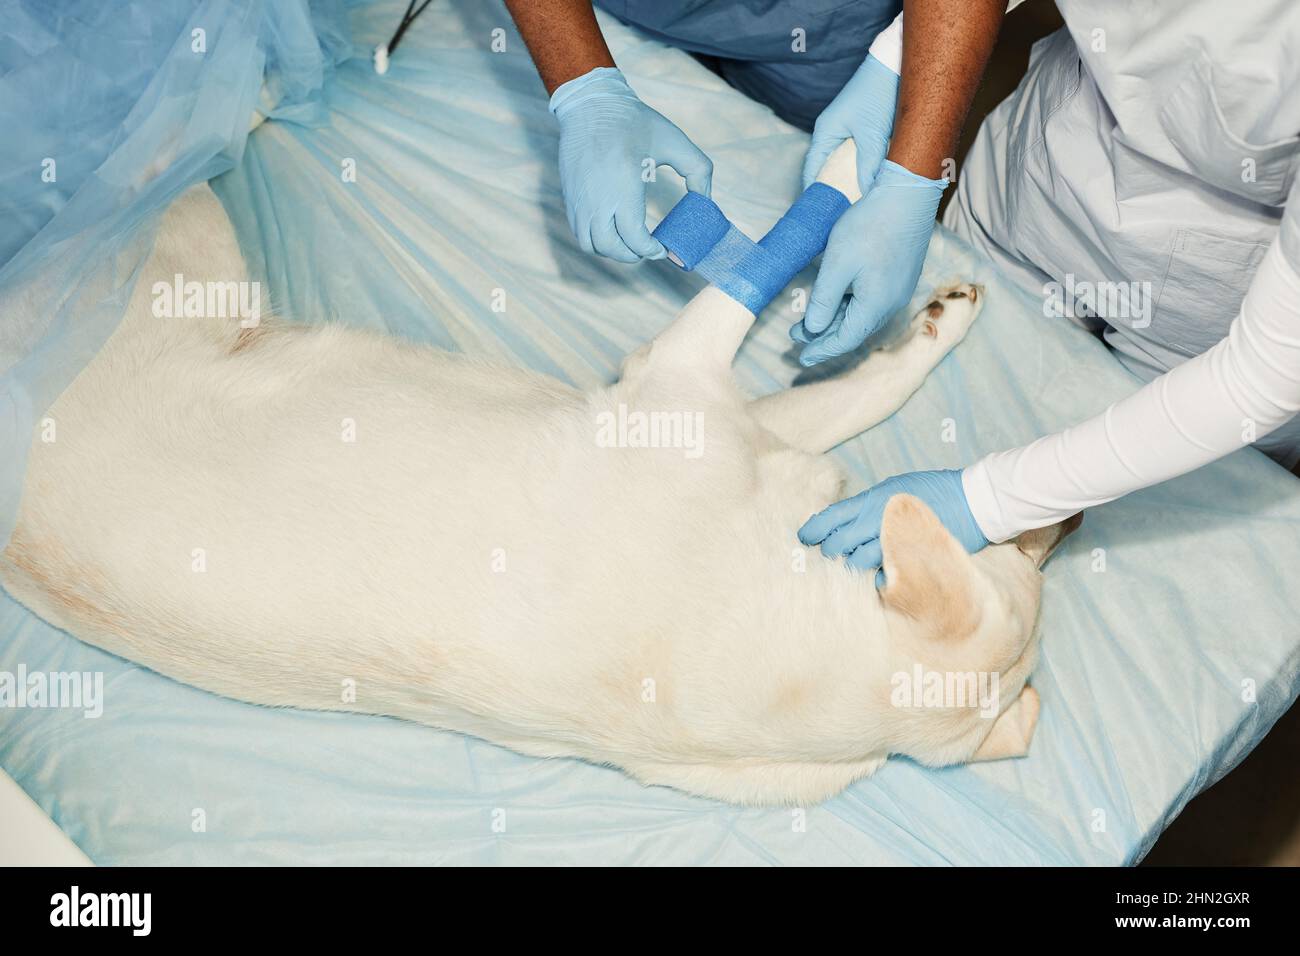 Behandelter Tierarzt und seine Assistentin legen blaue elastische Binde um verletzte Hundepfote, während sie sich über den medizinischen Tisch beugen Stockfoto